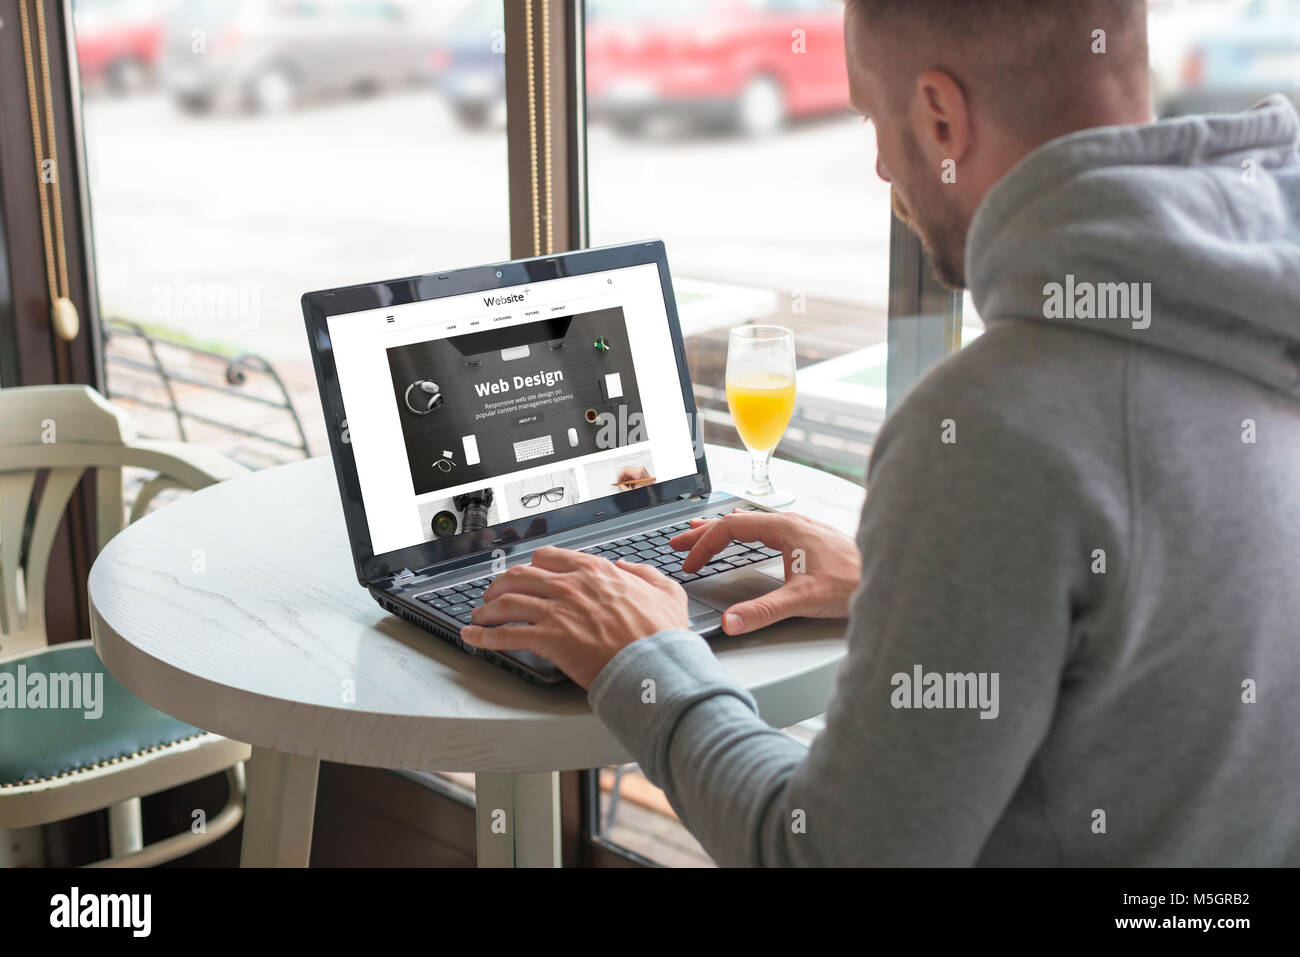 Ouvert aux visiteurs un site web responsable de la société de design sur son ordinateur portable. Café-restaurant dans l'arrière-plan. Banque D'Images